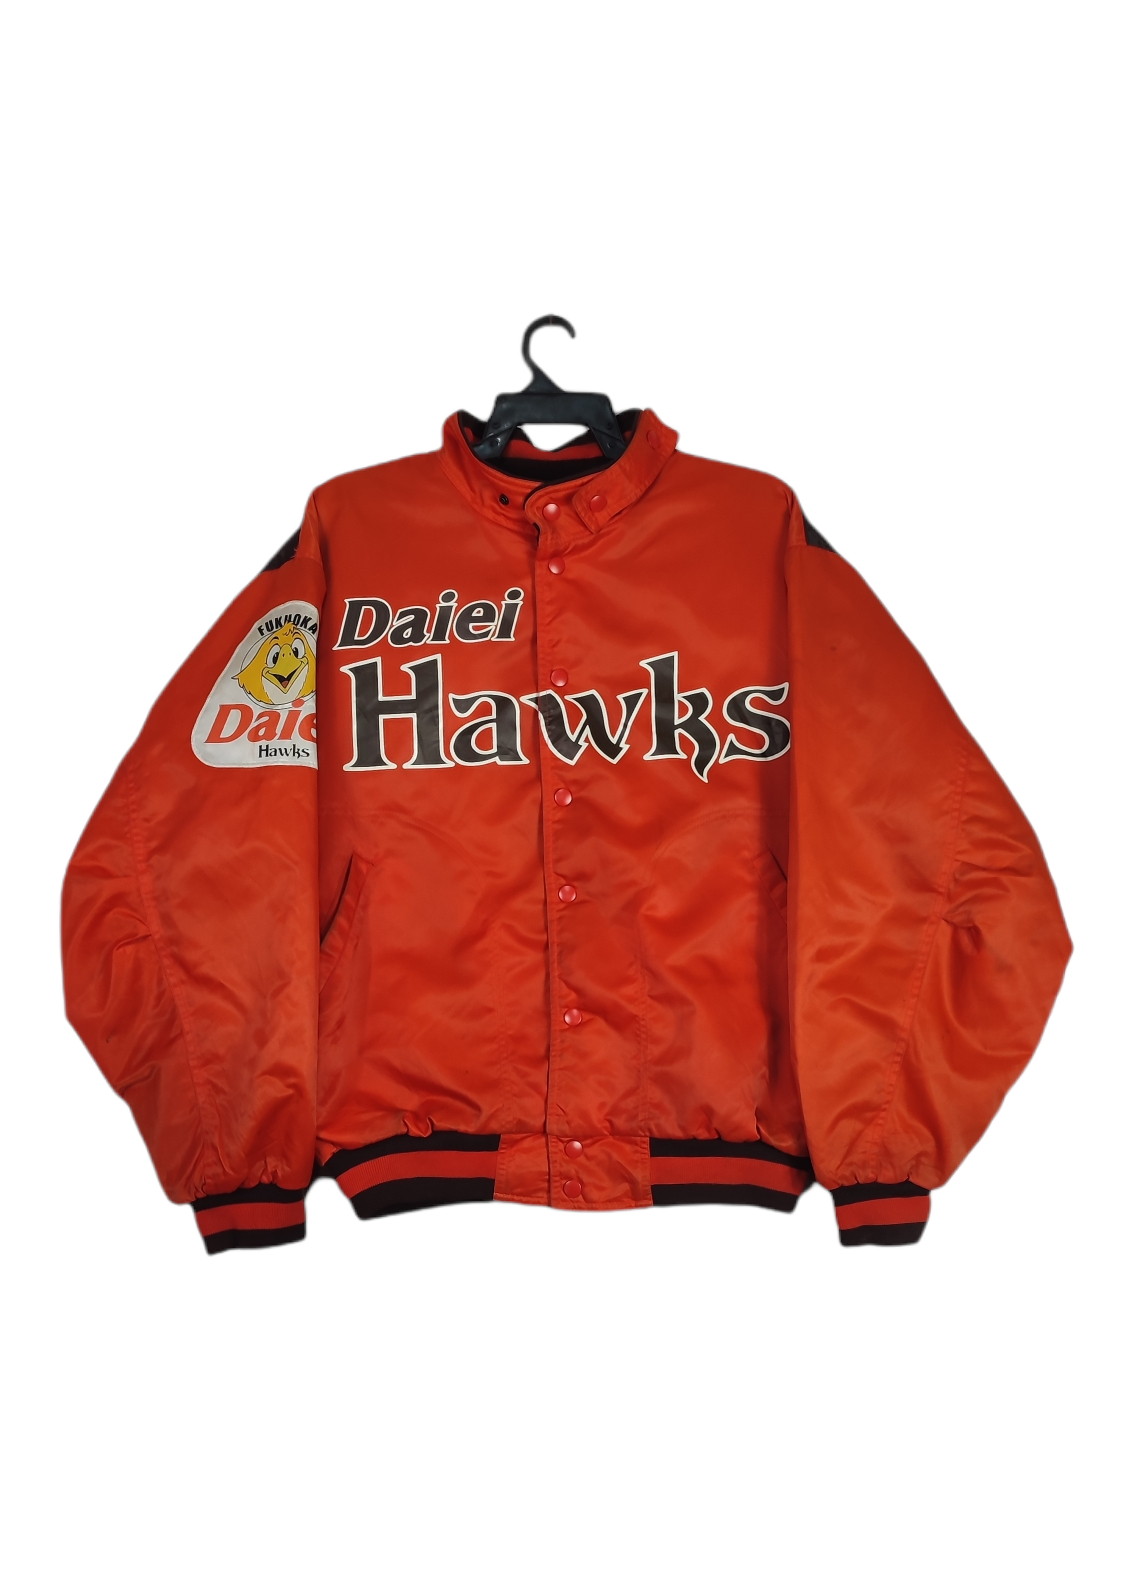 Vintage Daiei Hawks Bomber Jacket - 1